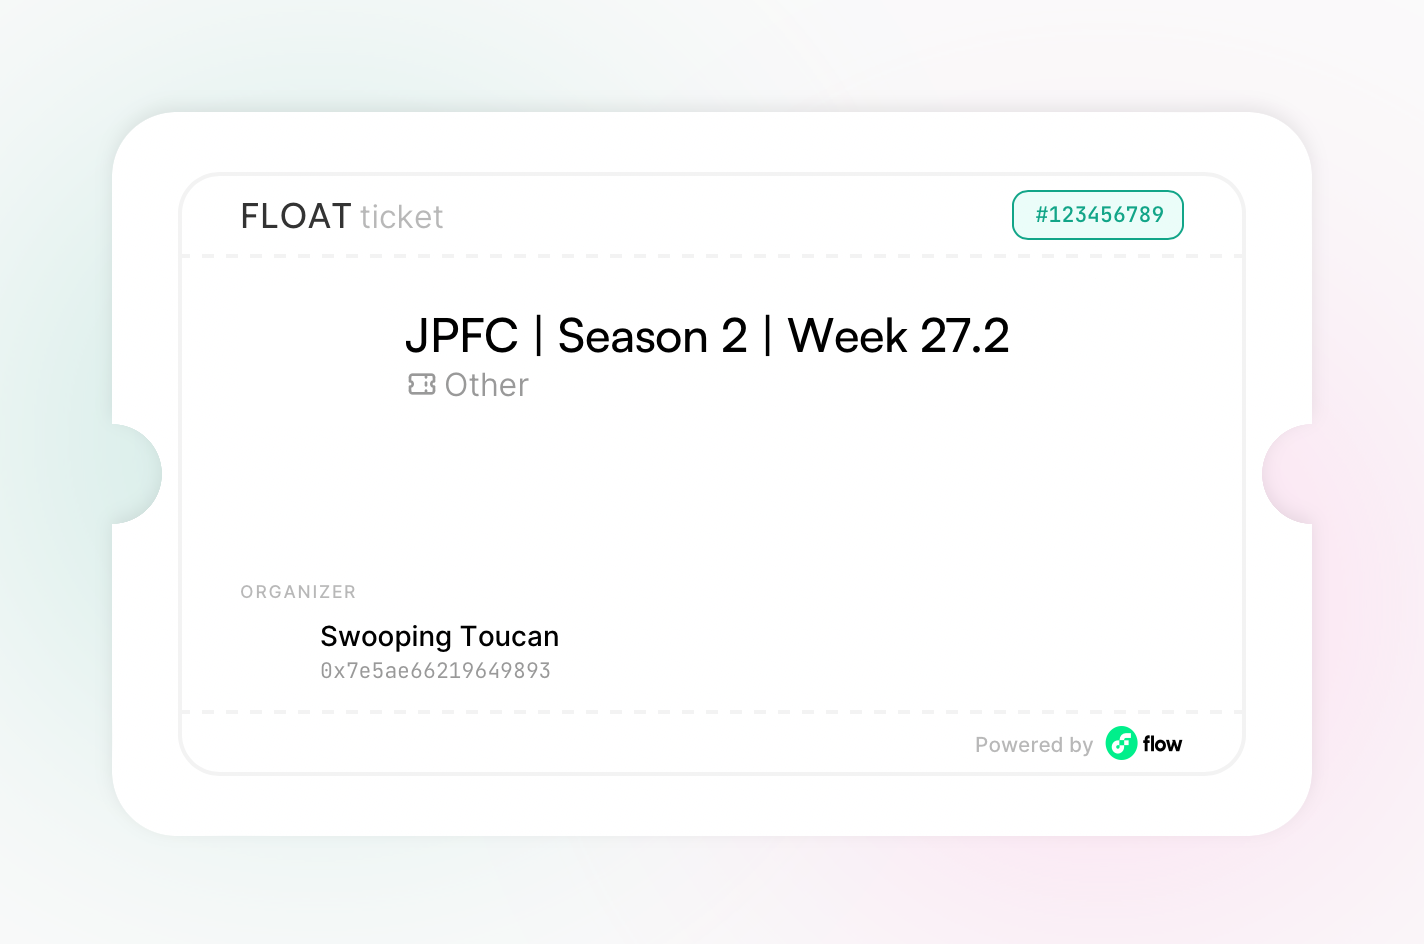 JPFC | Season 2 | Week 27.2 asset